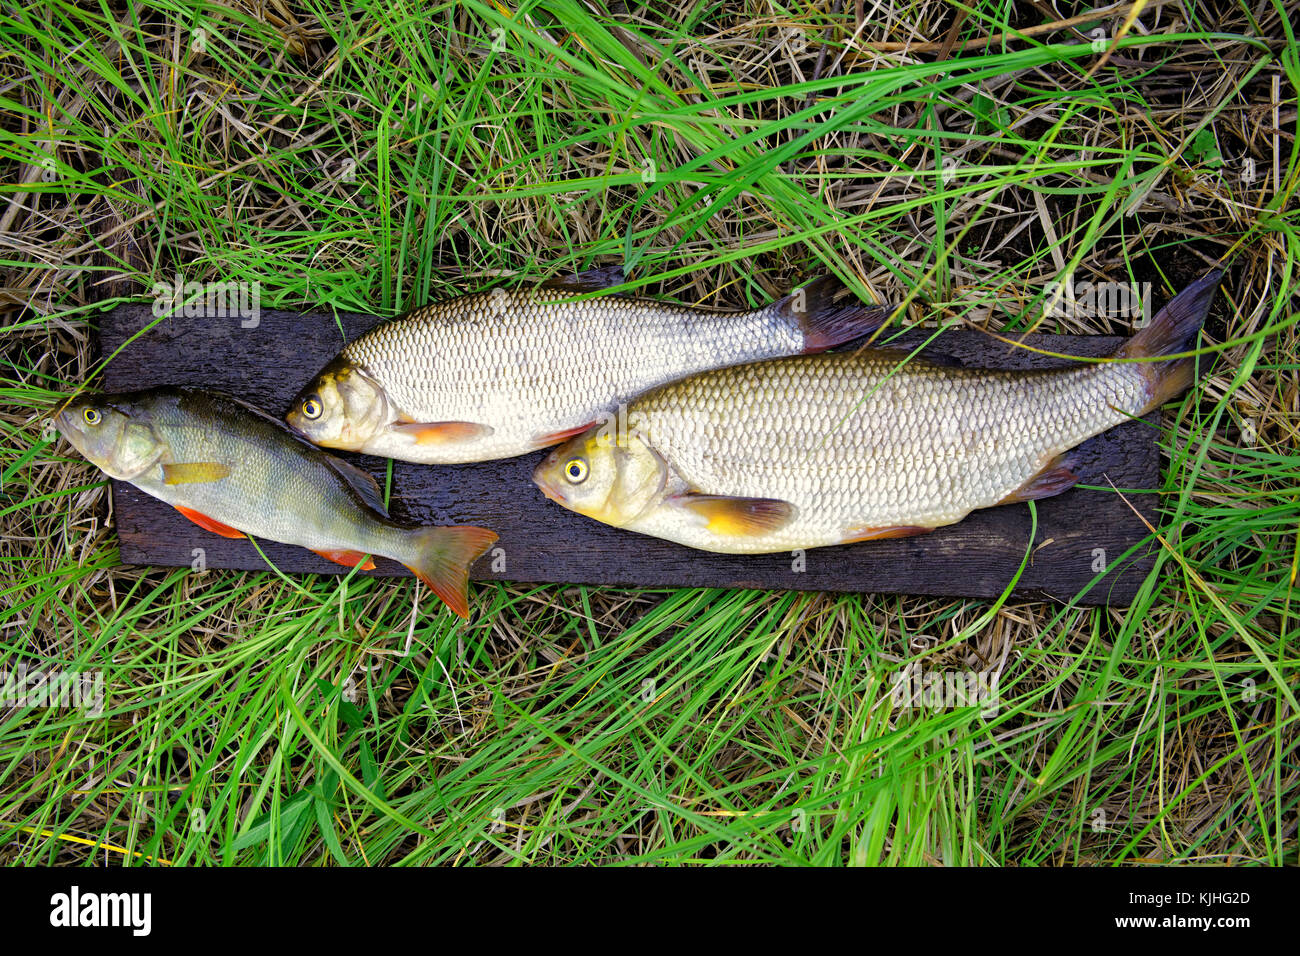 Les poissons d'eau douce - perchaude et ide sont sur le conseil dans l'herbe humide Banque D'Images